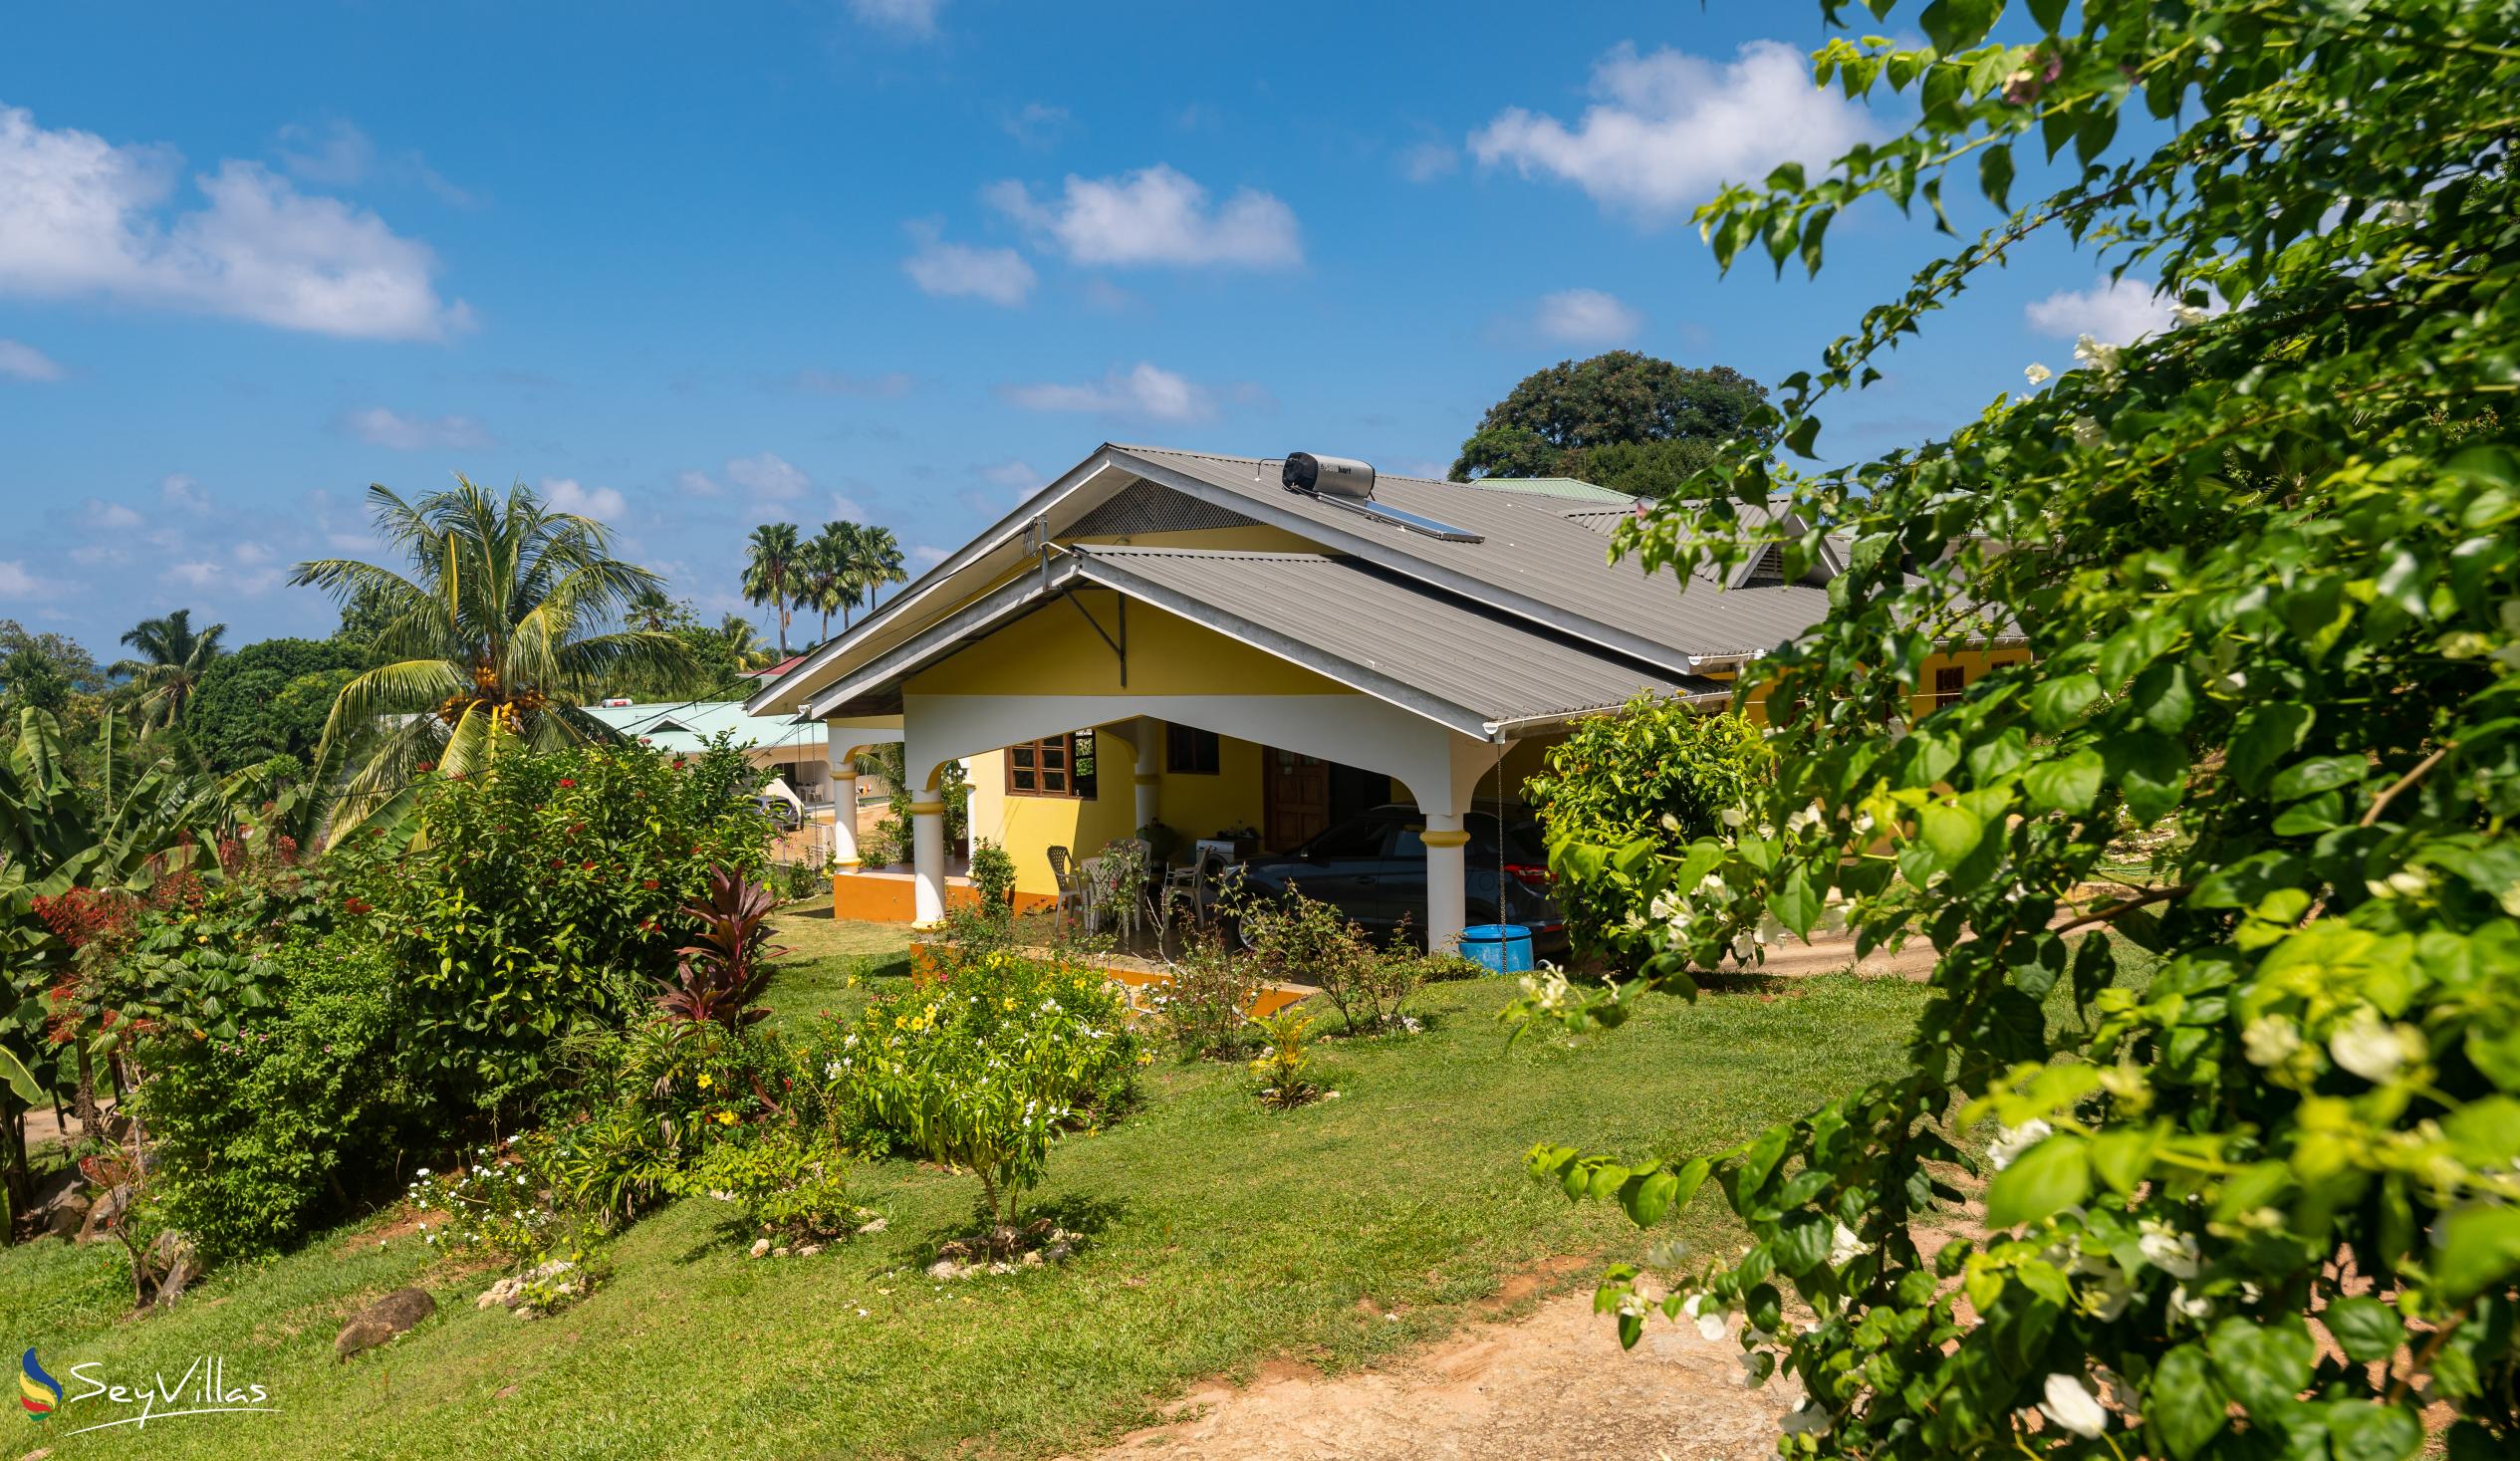 Foto 16: Maison Marikel - Aussenbereich - Mahé (Seychellen)